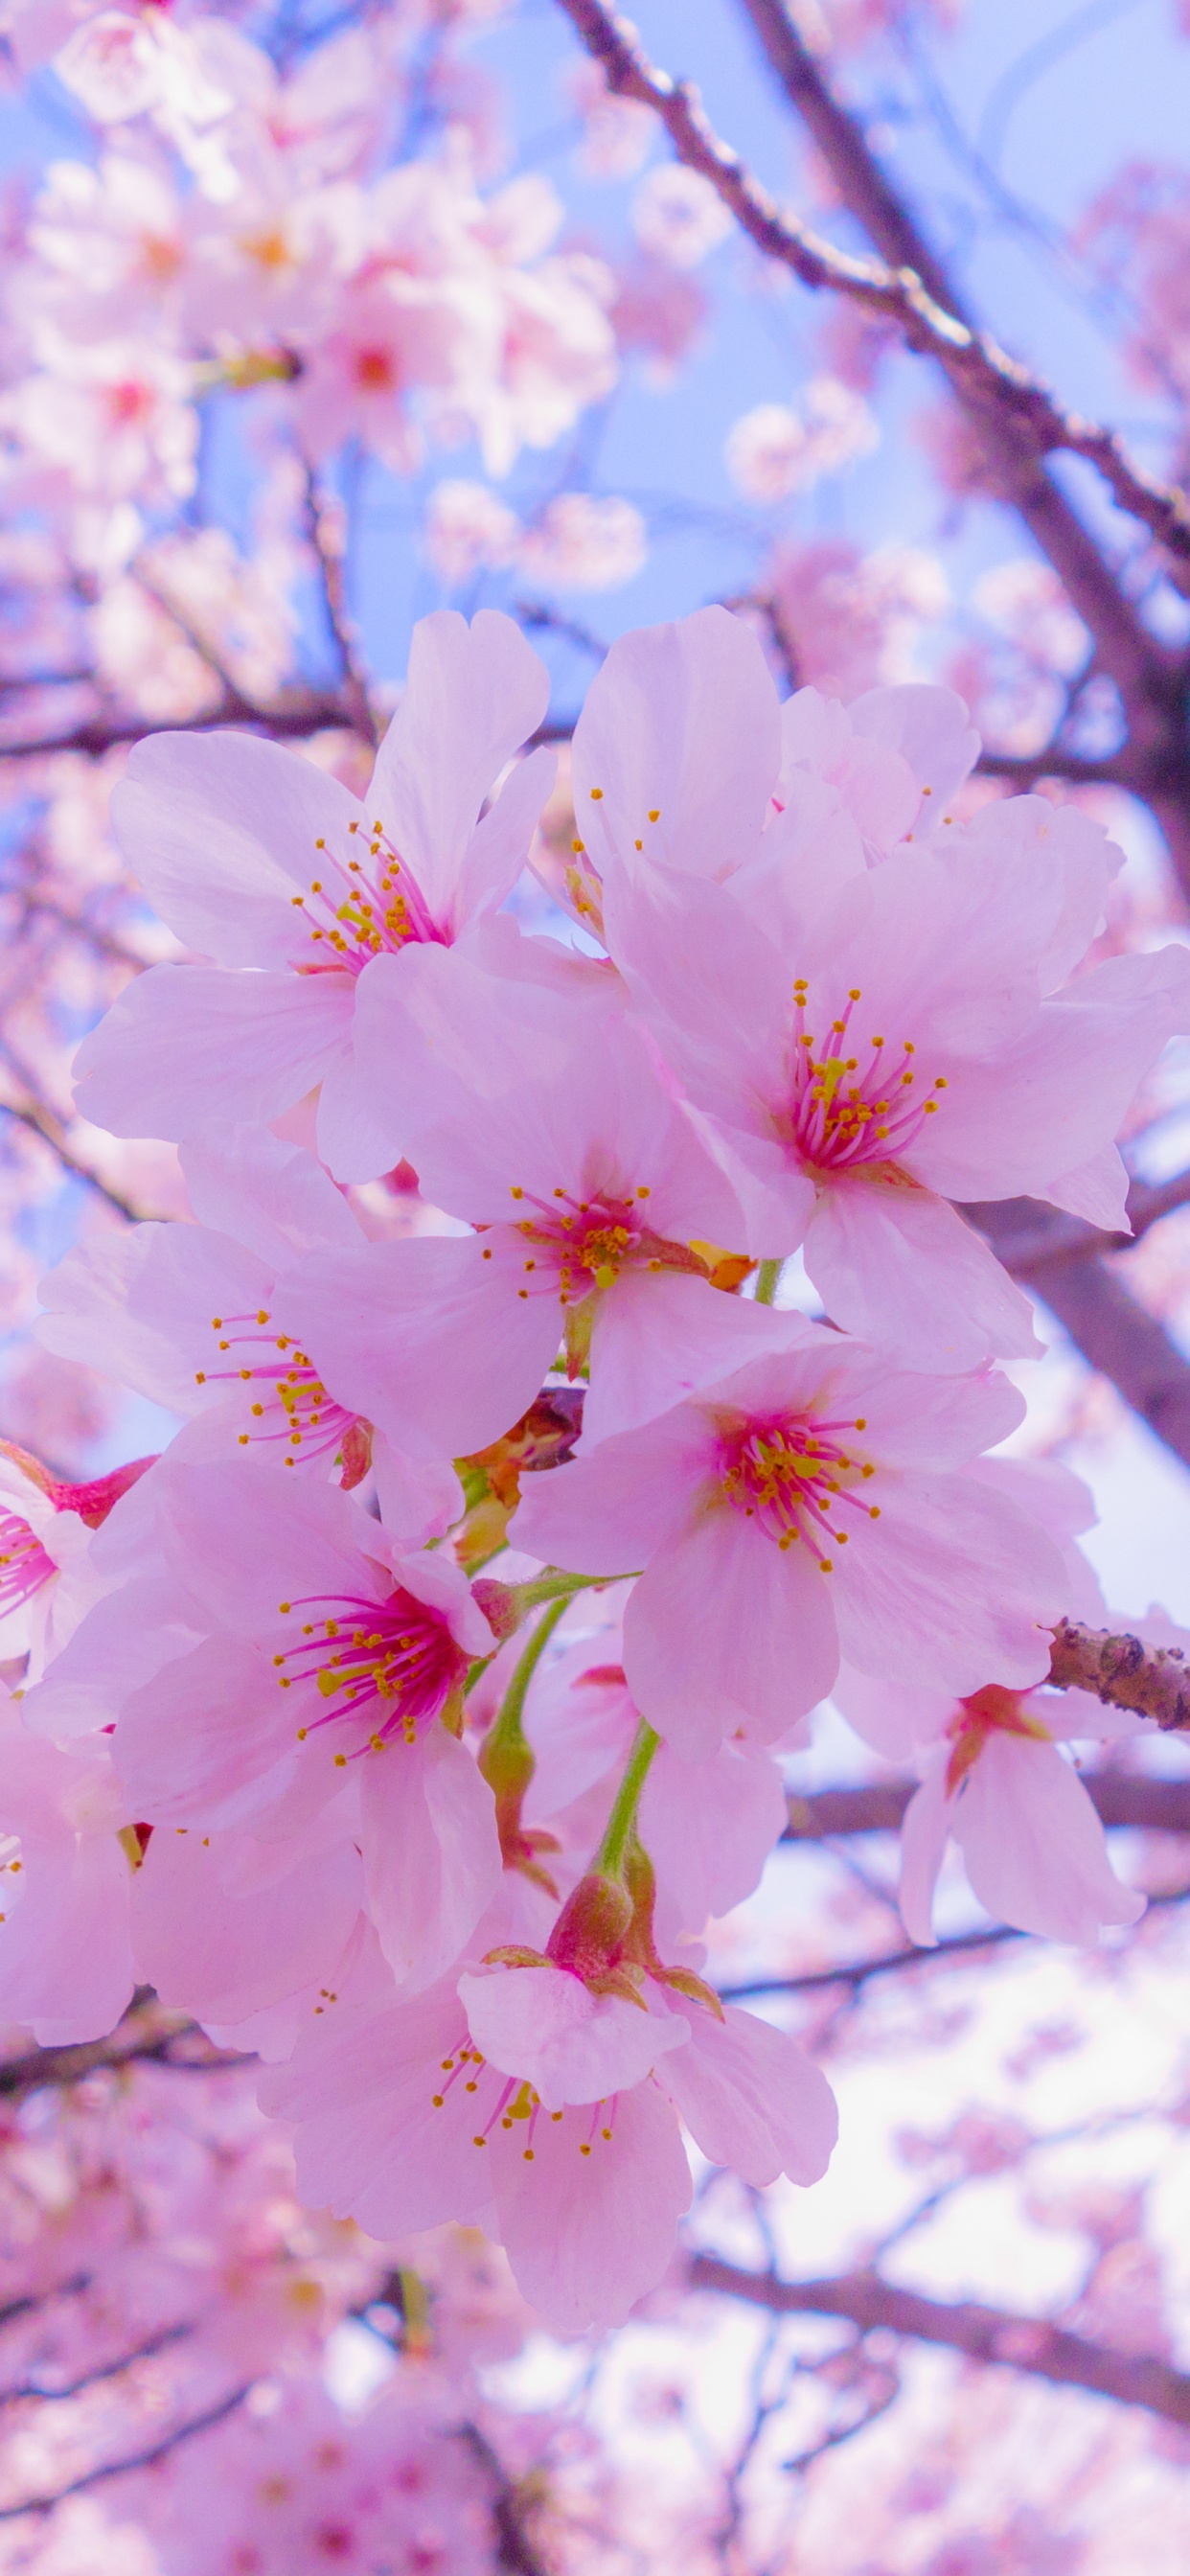 樱花, 开花, 粉红色, 弹簧, 树枝 壁纸 1242x2688 允许